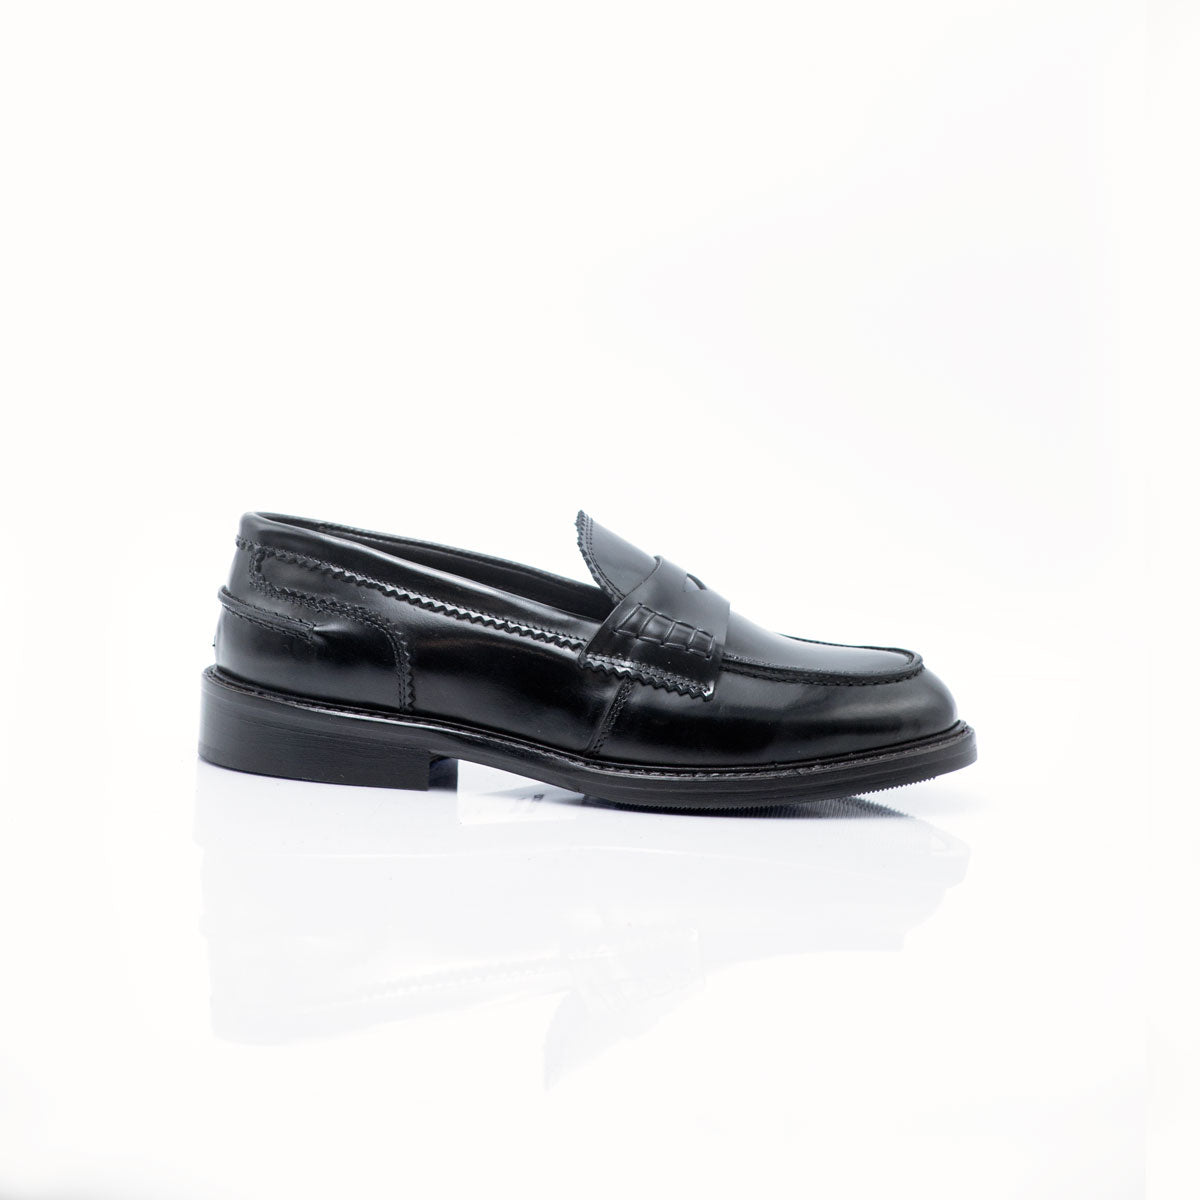 Figini - Black College Loafer in Abrasive leather